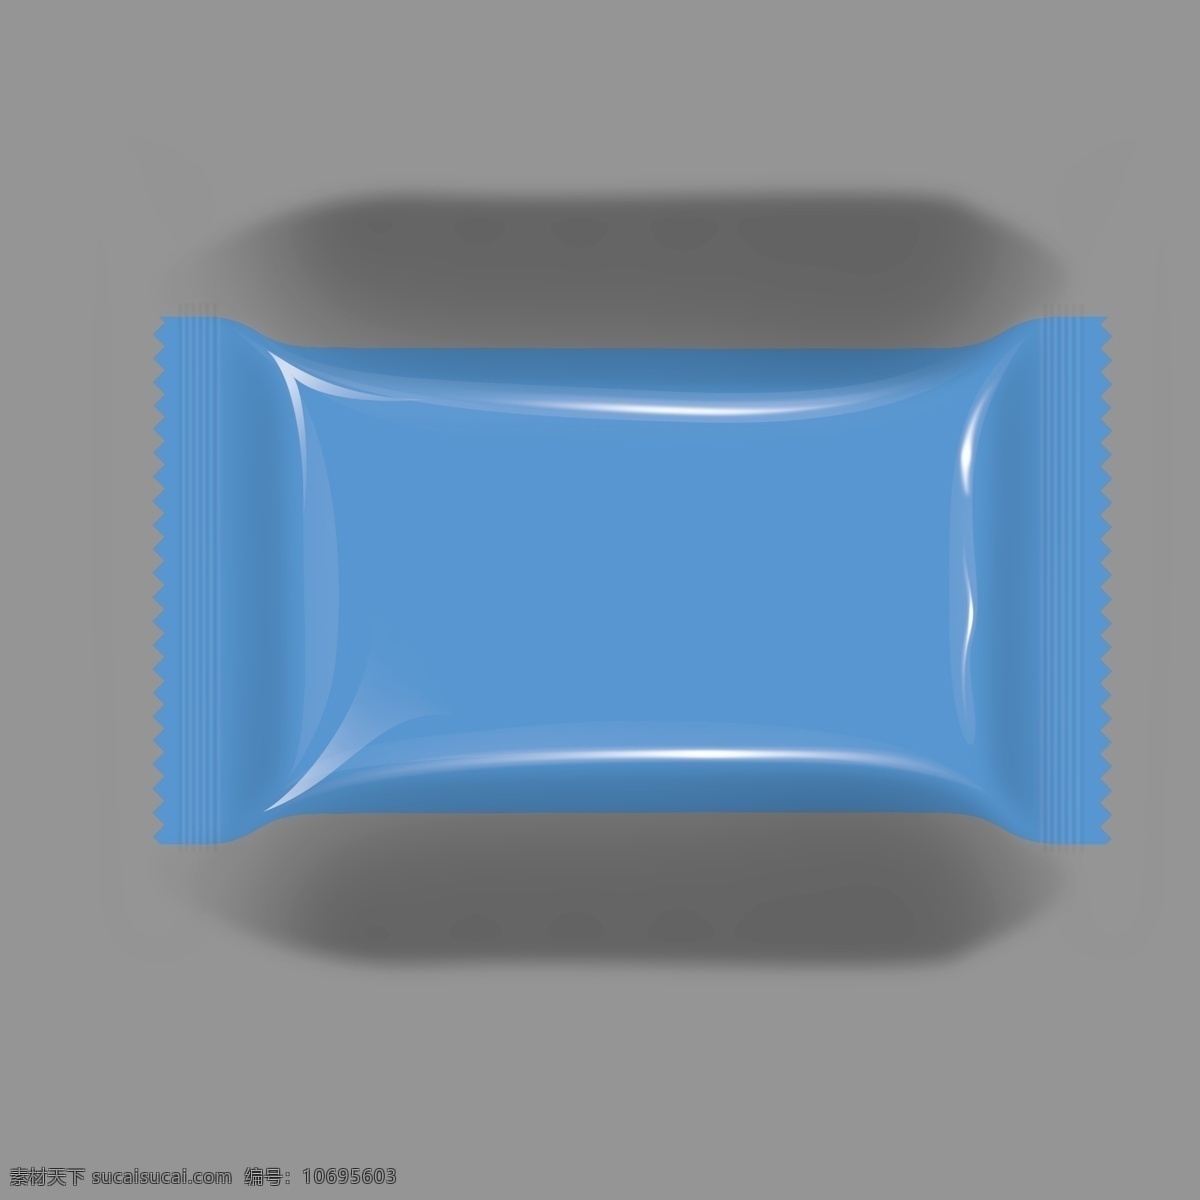 铝箔 袋子 效果图 模板 袋子模板 psd分层 铝箔袋 食品包装袋 包装 蓝色立体图 3d 3d设计 3d作品